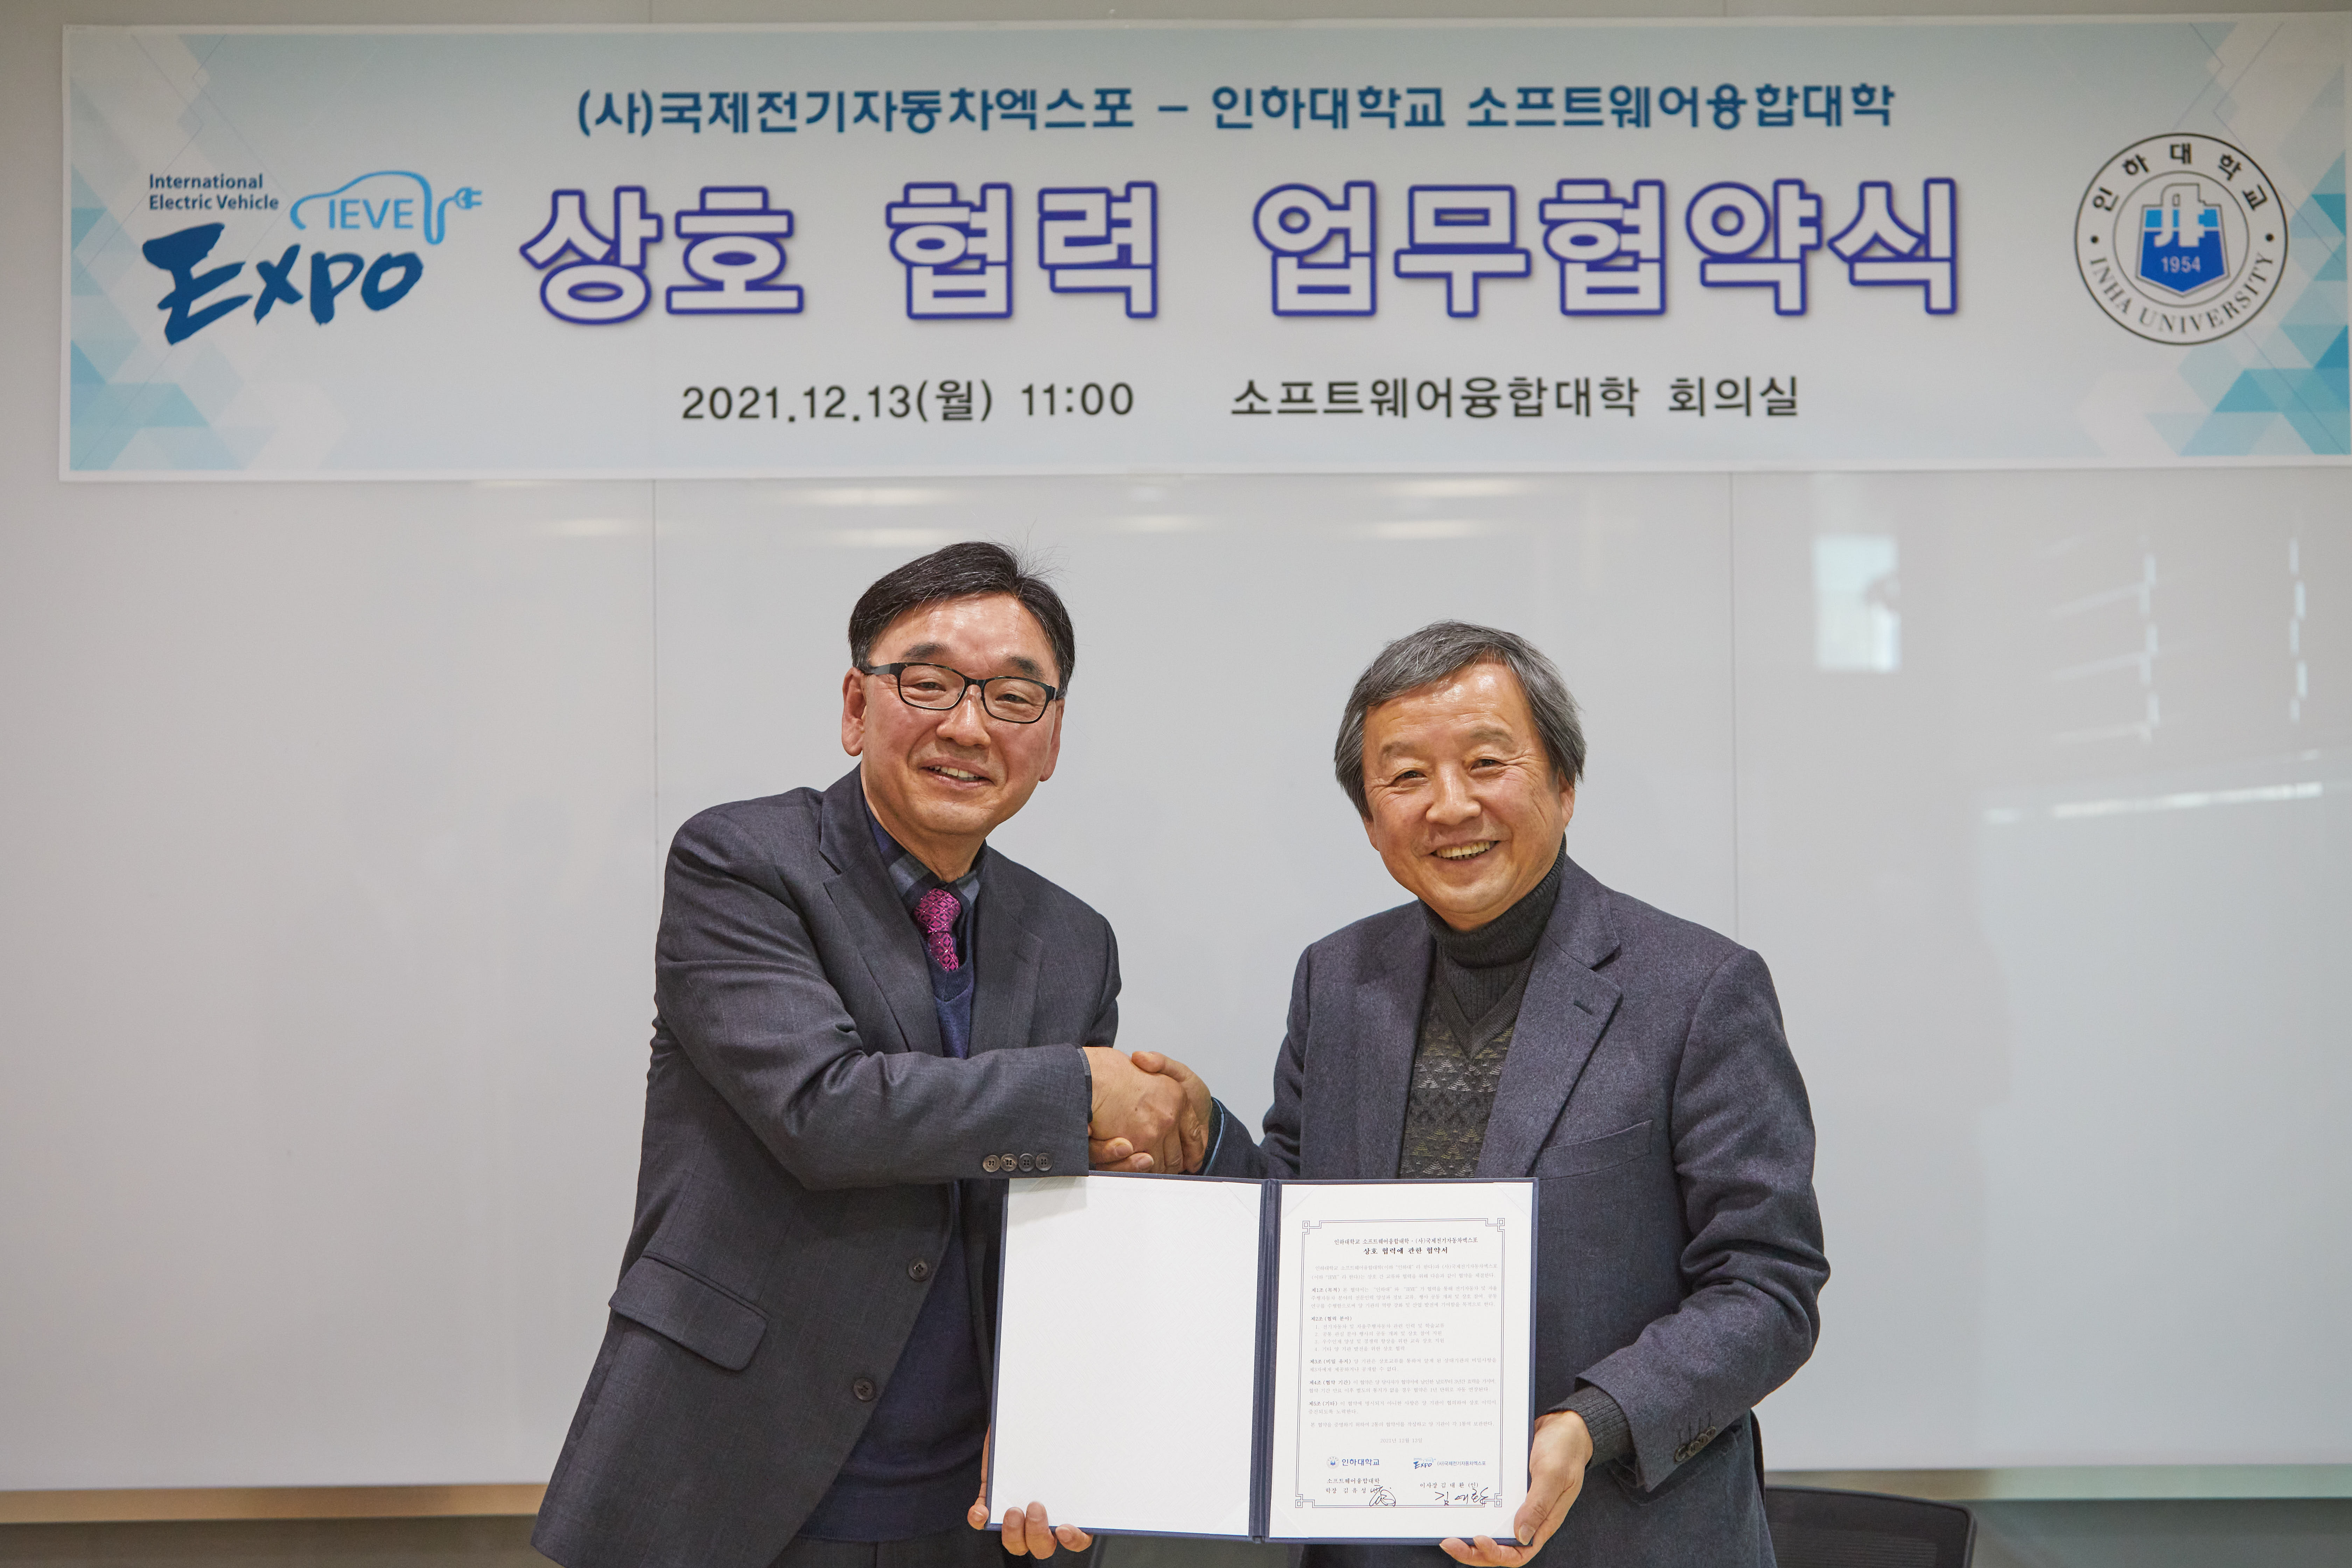 김유성 소프트웨어융합대학 학장(왼쪽)과 김대환 (사)국제전기자동차엑스포 이사장이 협약서를 들고 기념촬영을 하고 있다. 